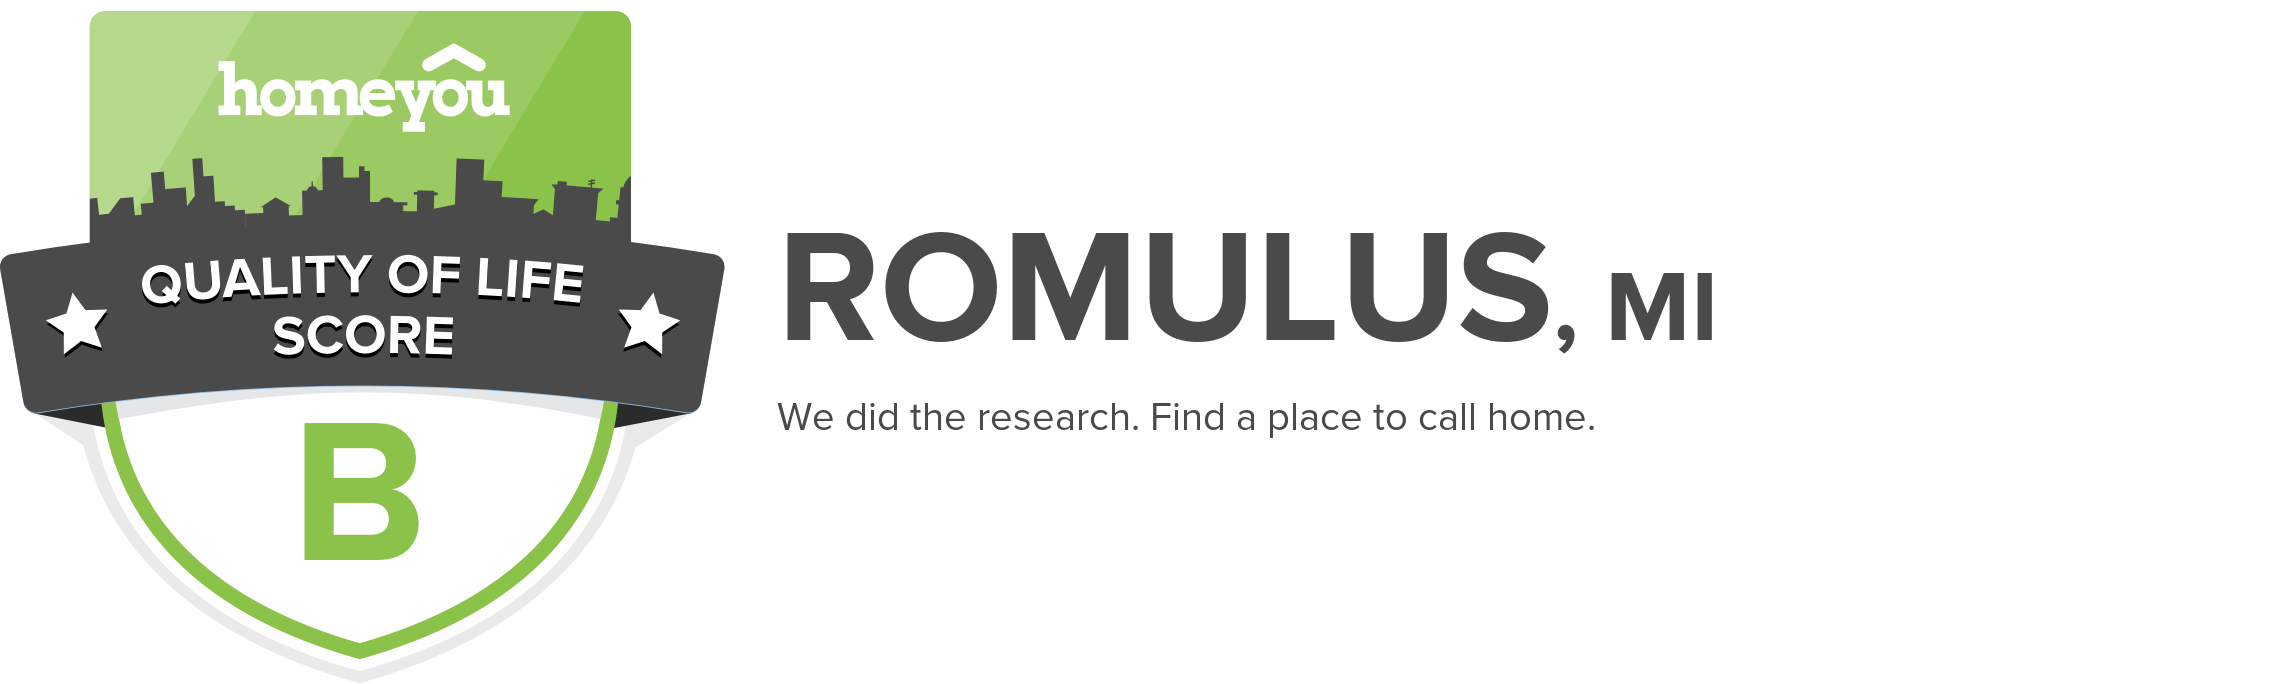 Romulus, MI